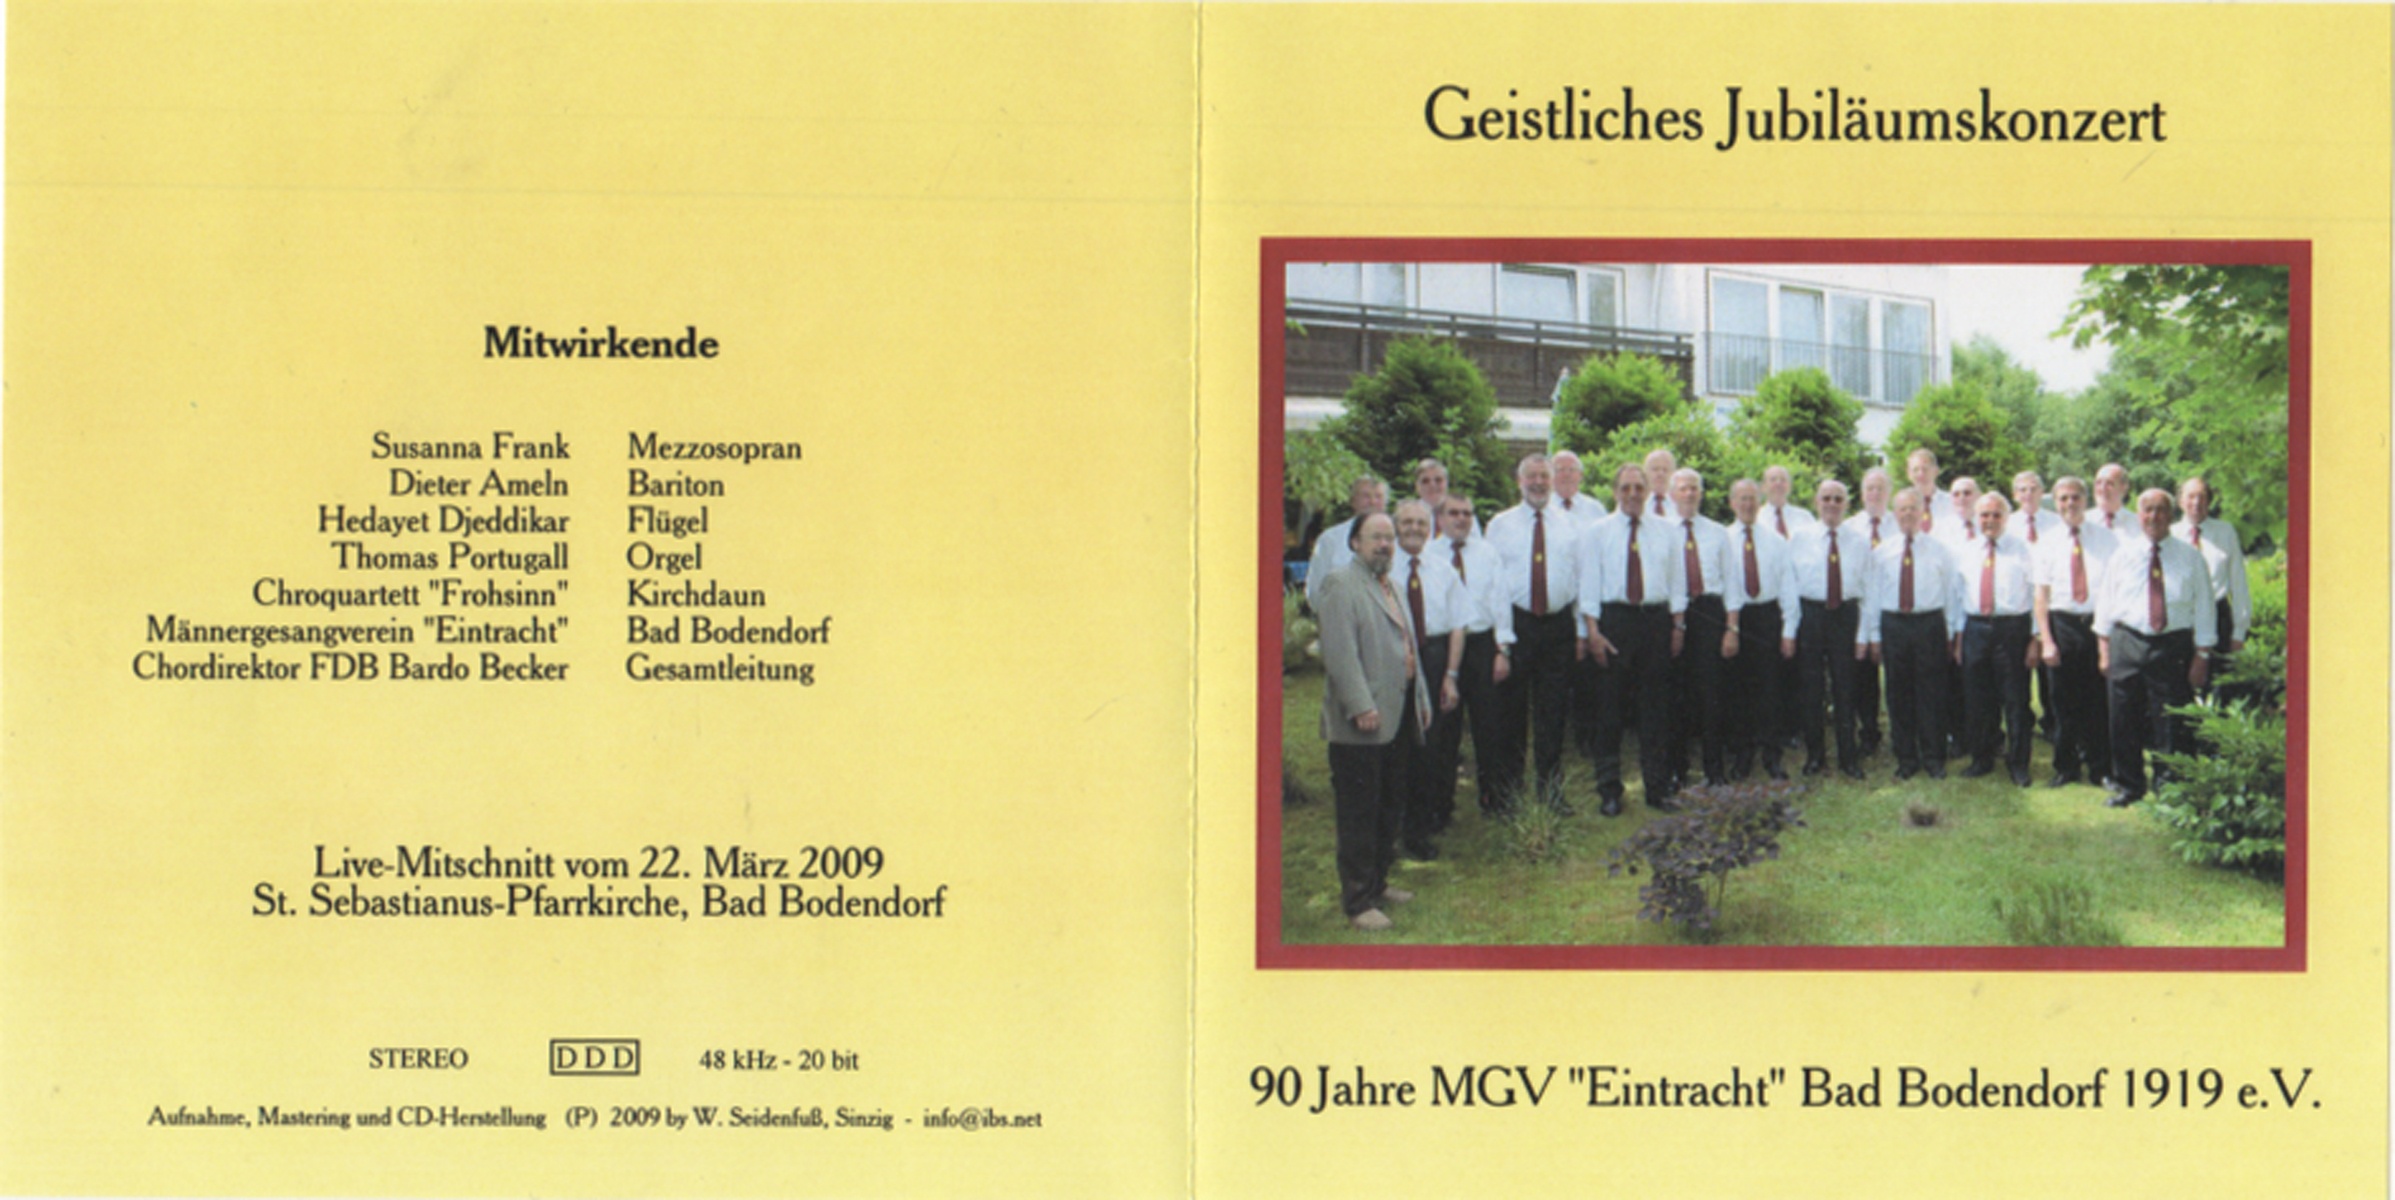 Geistliches Jubiläumskonzert zu 90 Jahre MGV "Eintracht" Bad Bodendorf 1919 e.V. (Heimatmuseum und -Archiv Bad Bodendorf CC BY-NC-SA)